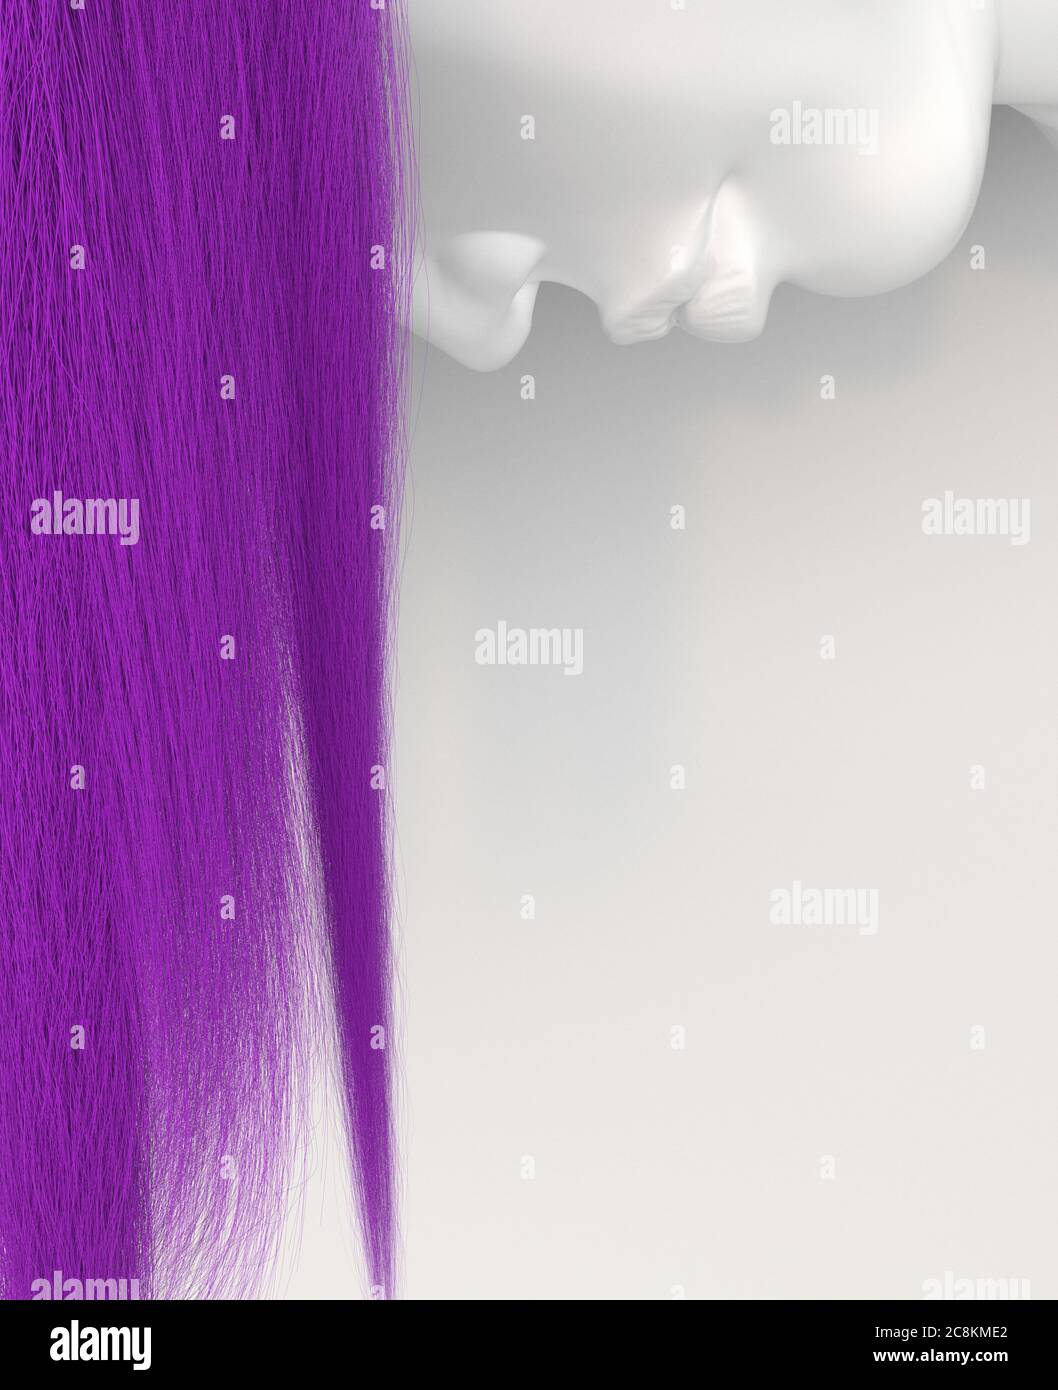 La cara de la mujer boca abajo con el pelo largo que fluye púrpura sobre un fondo blanco. Cabello colorido brillante. Ilustración conceptual creativa con espacio de copia. Foto de stock